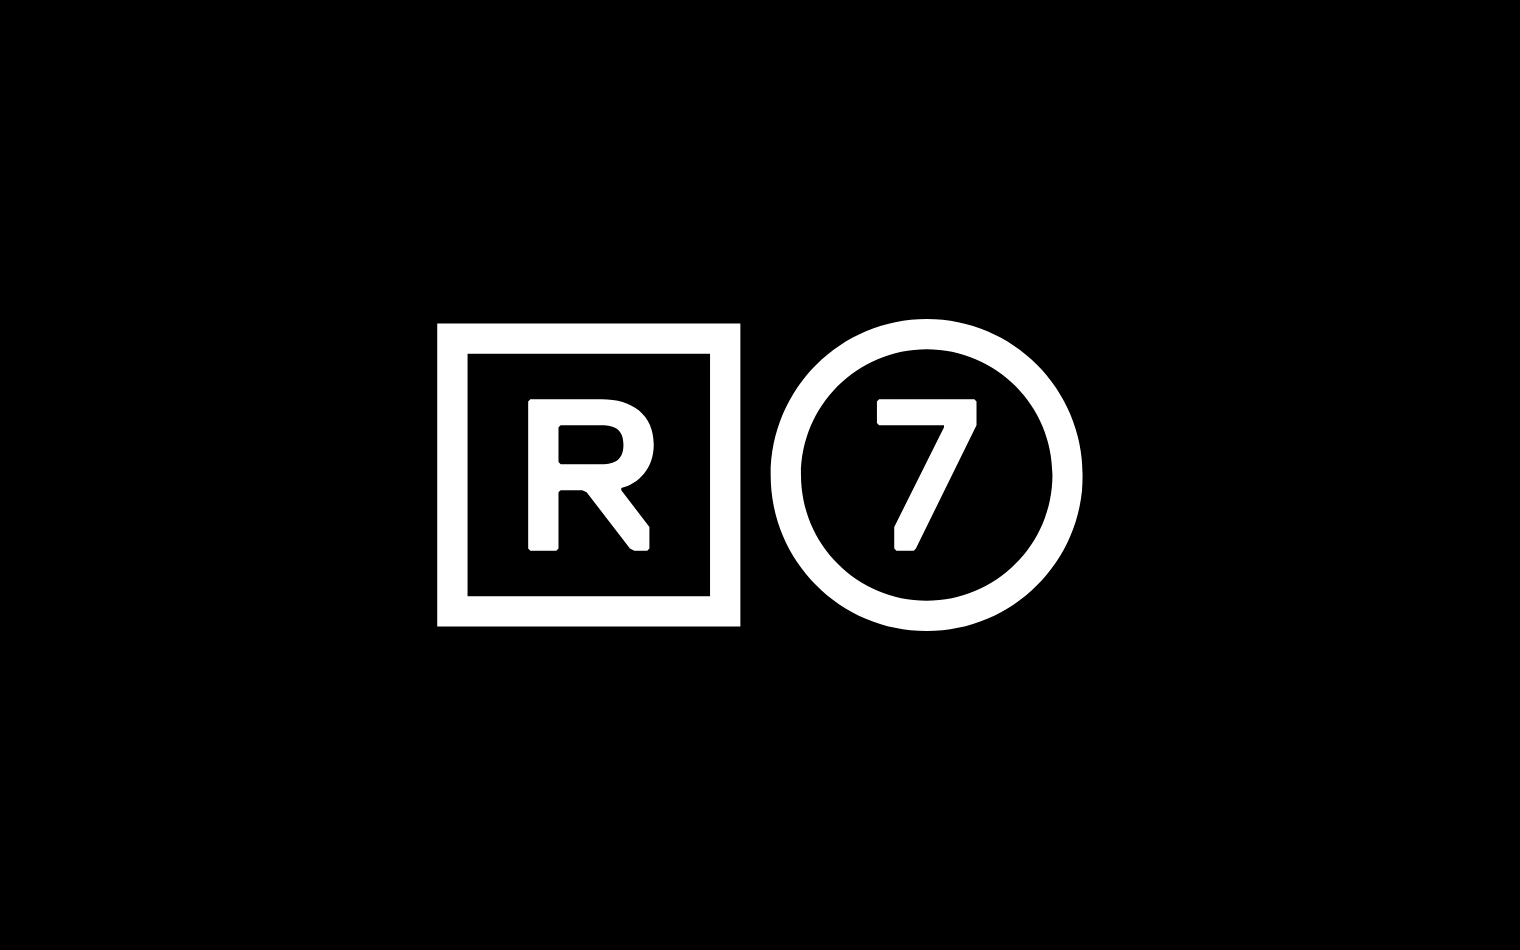 R7 | Steve Edge Design